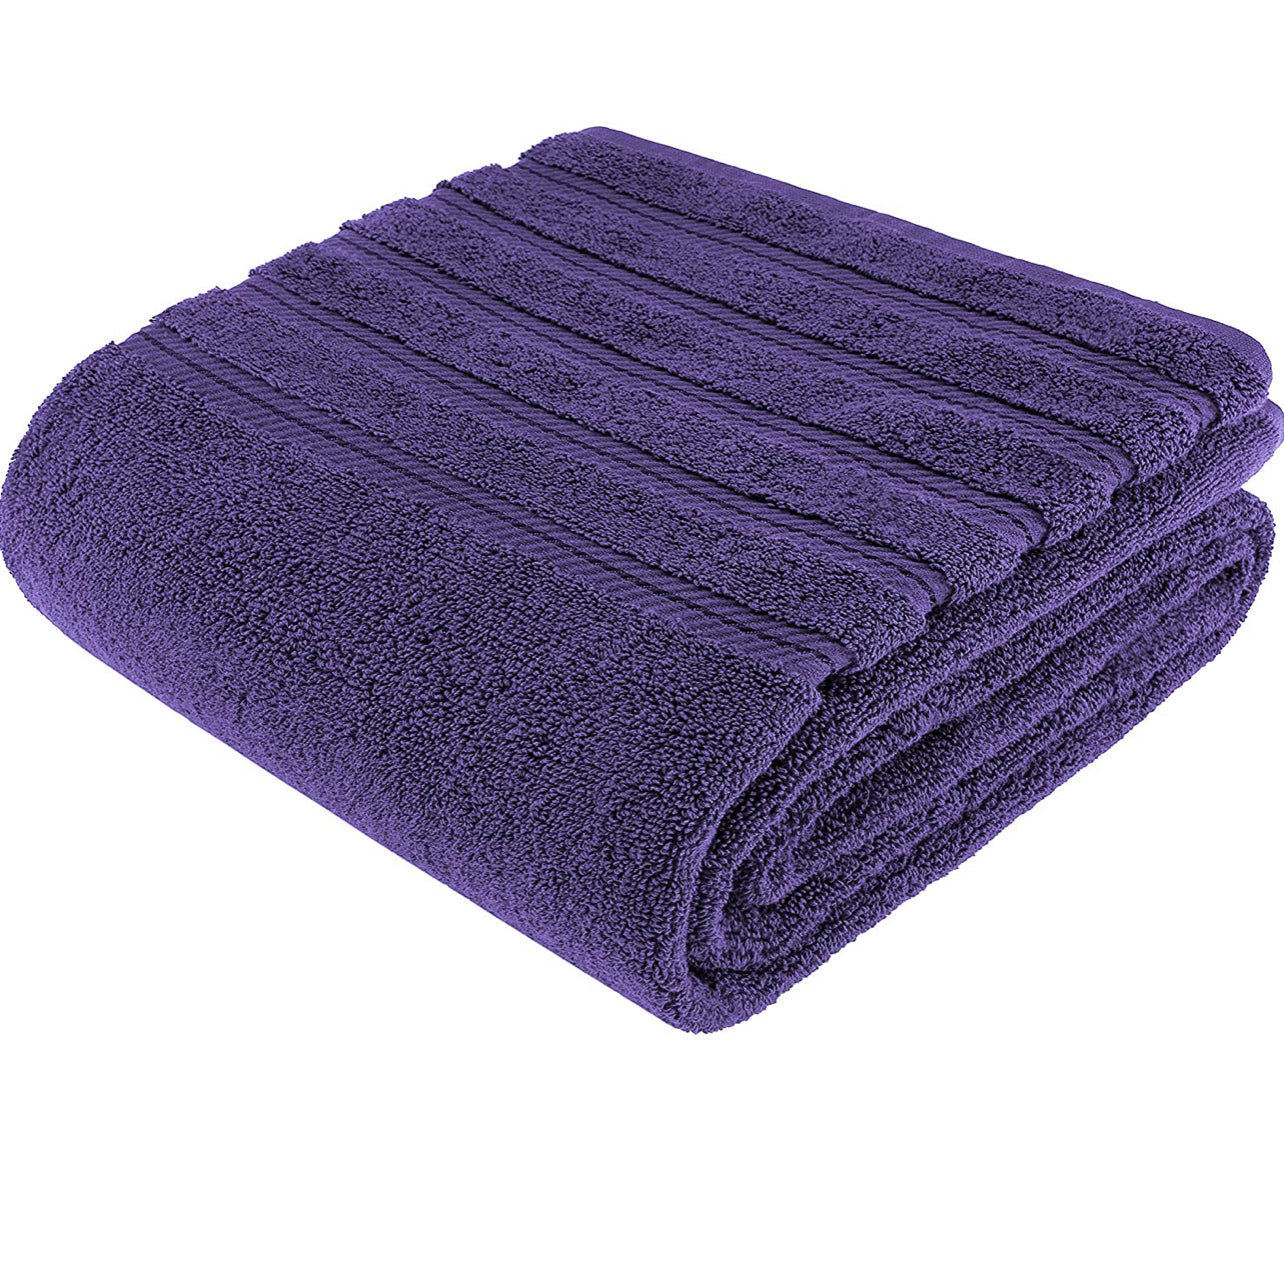 Premium Wash Cloths & Towels